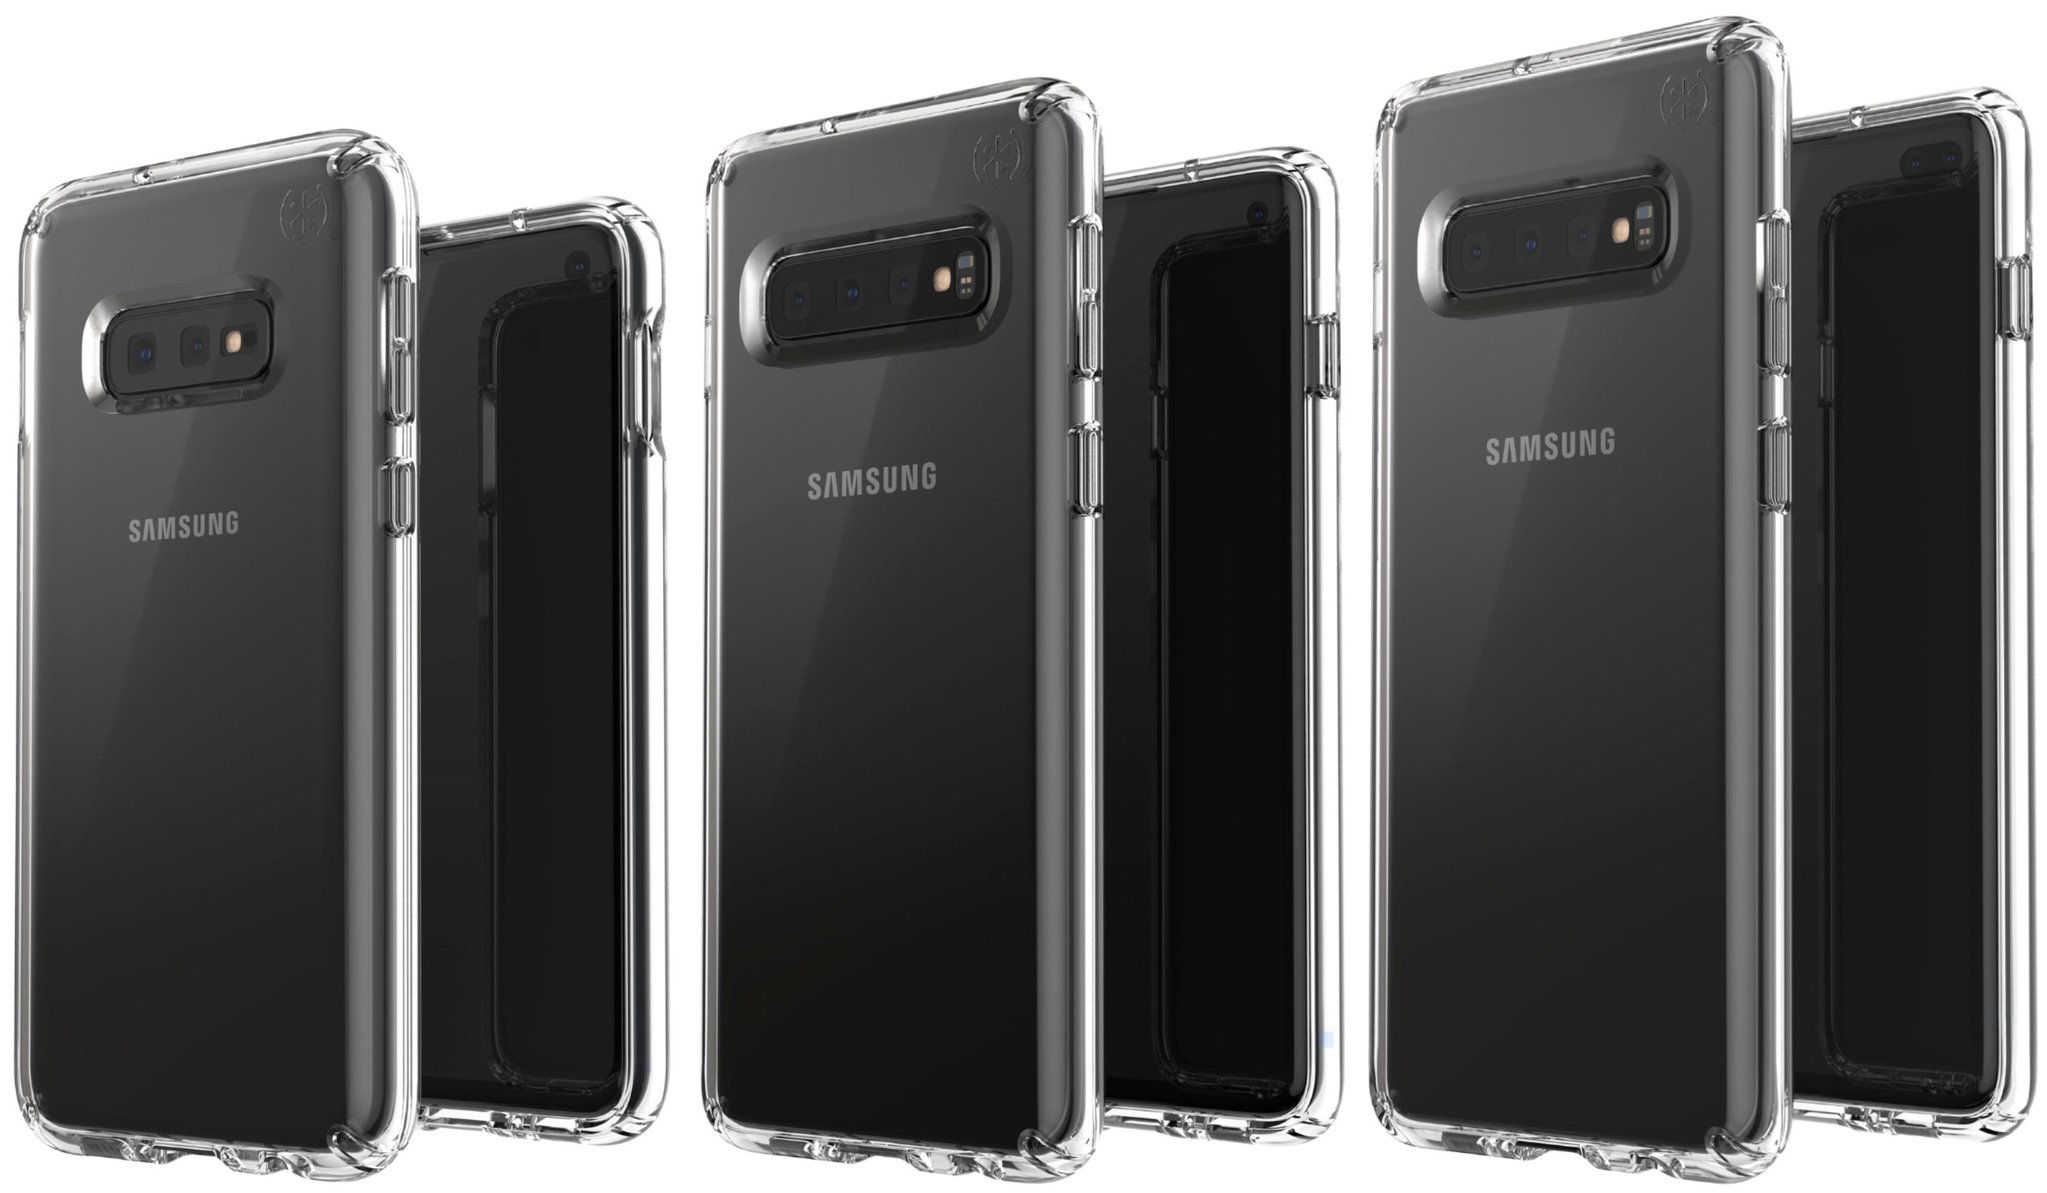 Immagine pubblicata in relazione al seguente contenuto: Una foto leaked svela in anteprima la linea completa Galaxy S10 di Samsung | Nome immagine: news29167_Samsung-Galaxy-S10_1.jpg